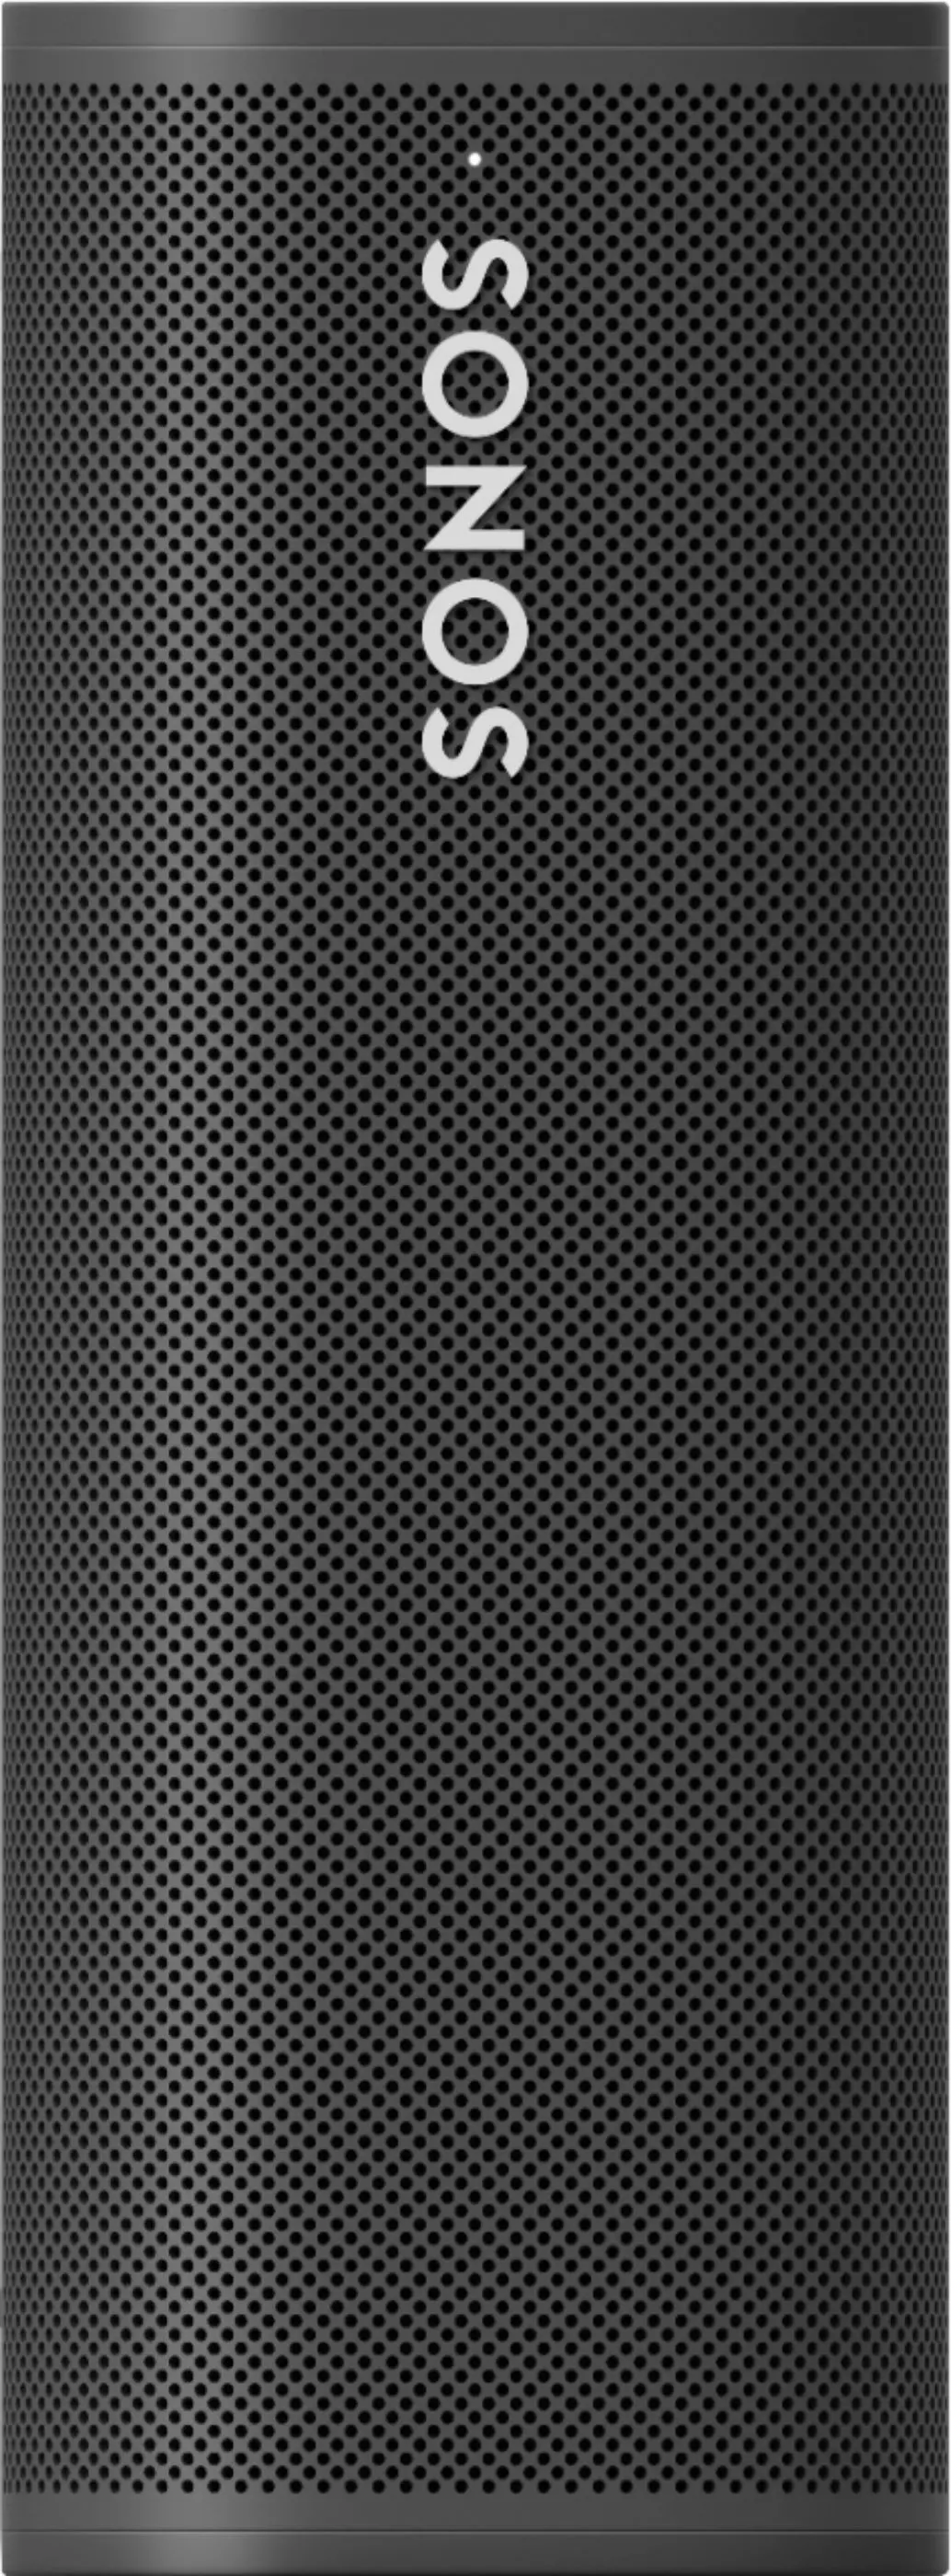 Sonos Roam Black Waterproof Portable Speaker